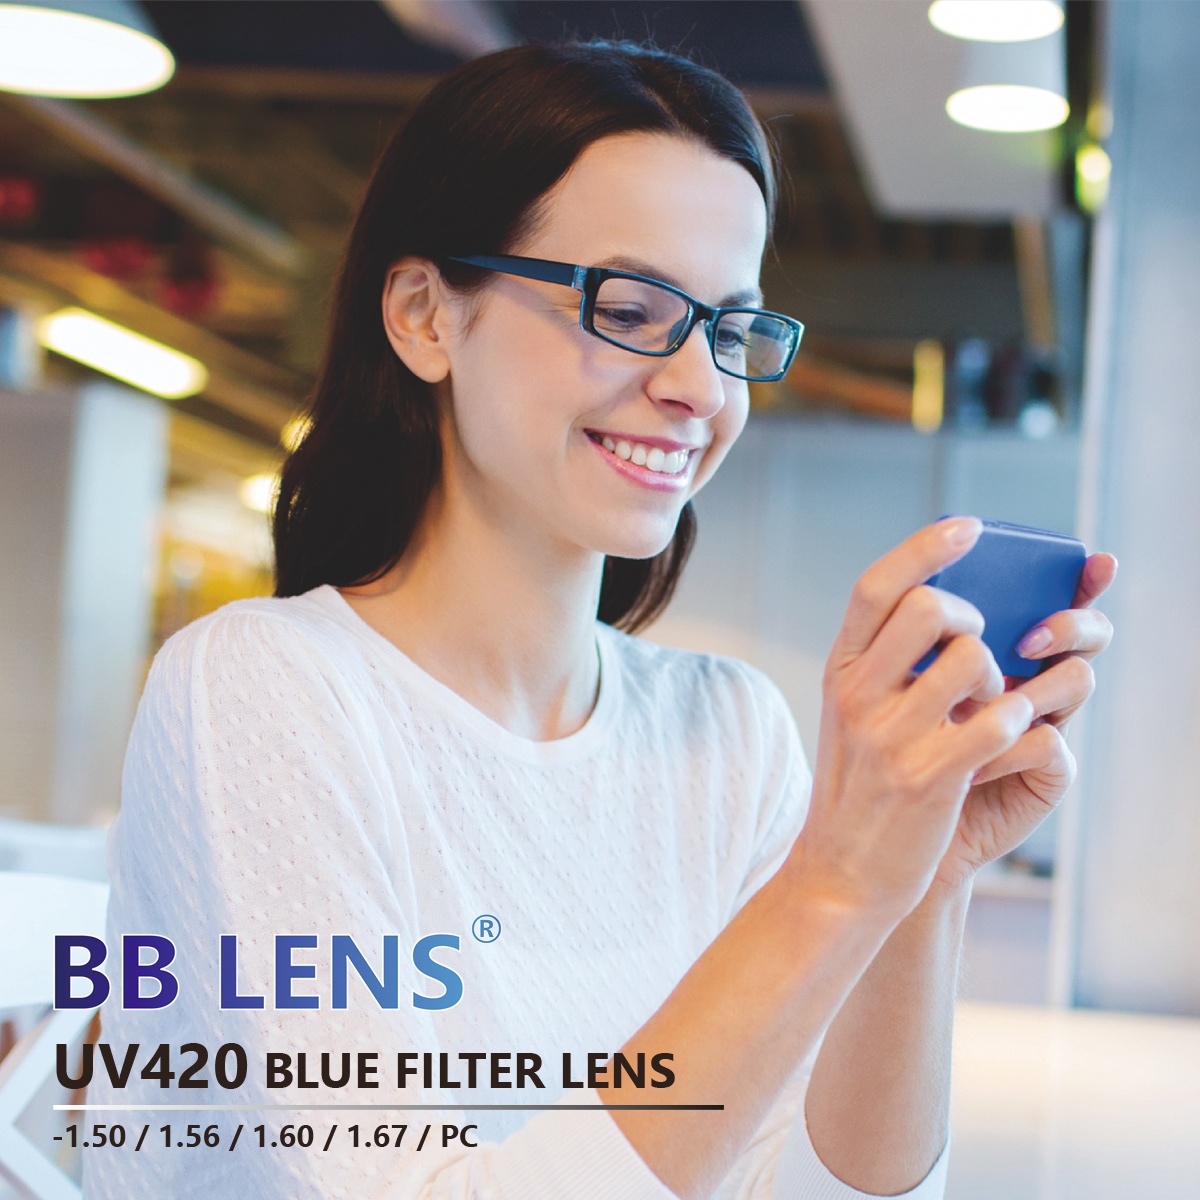 BB Lens-Blue Light Blocking Lenses